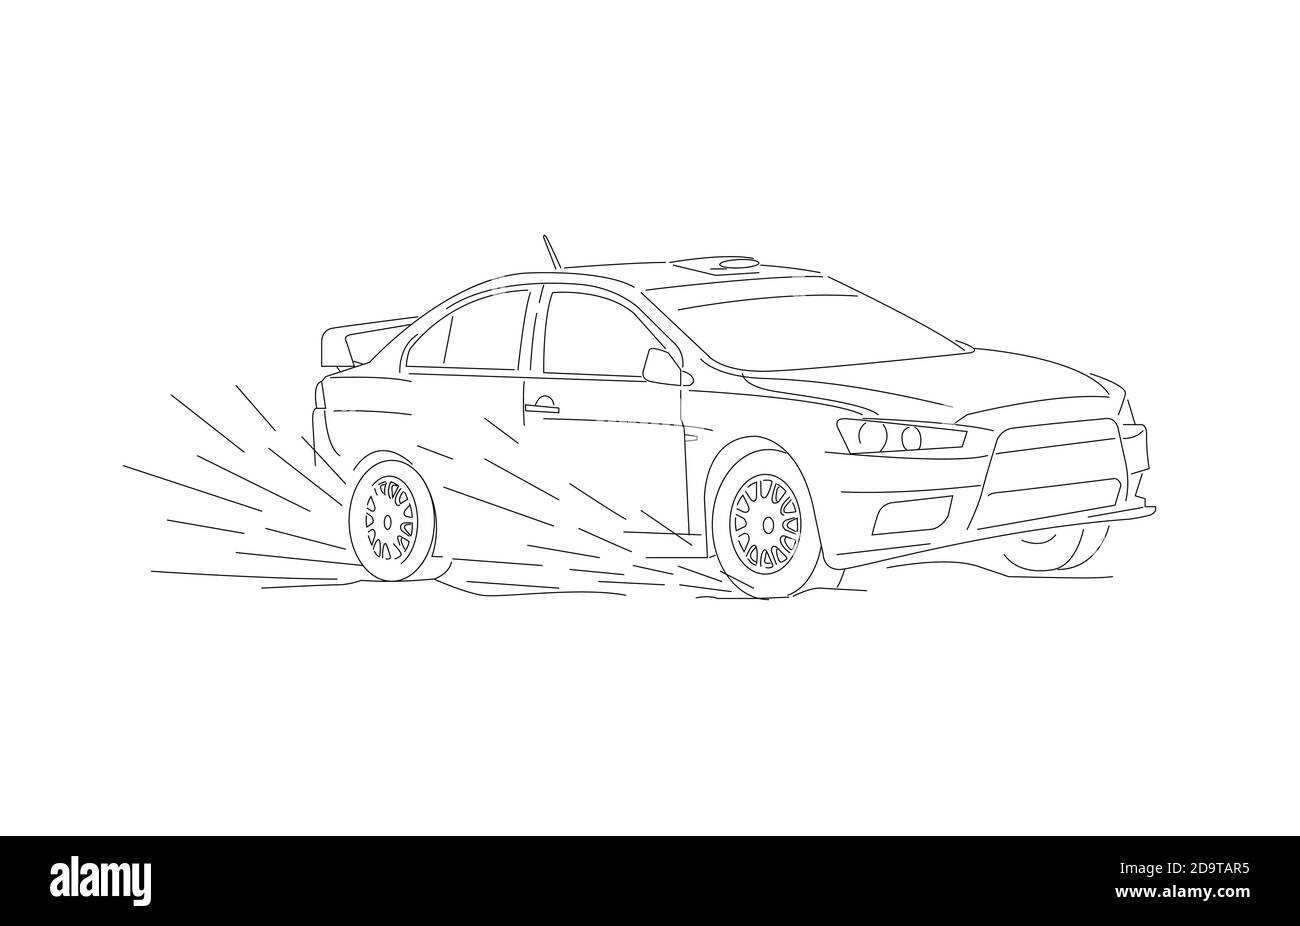 Illustration de la ligne de la voiture de sport en course en mouvement de vitesse, dérive dans la boue, croquis Illustration de Vecteur